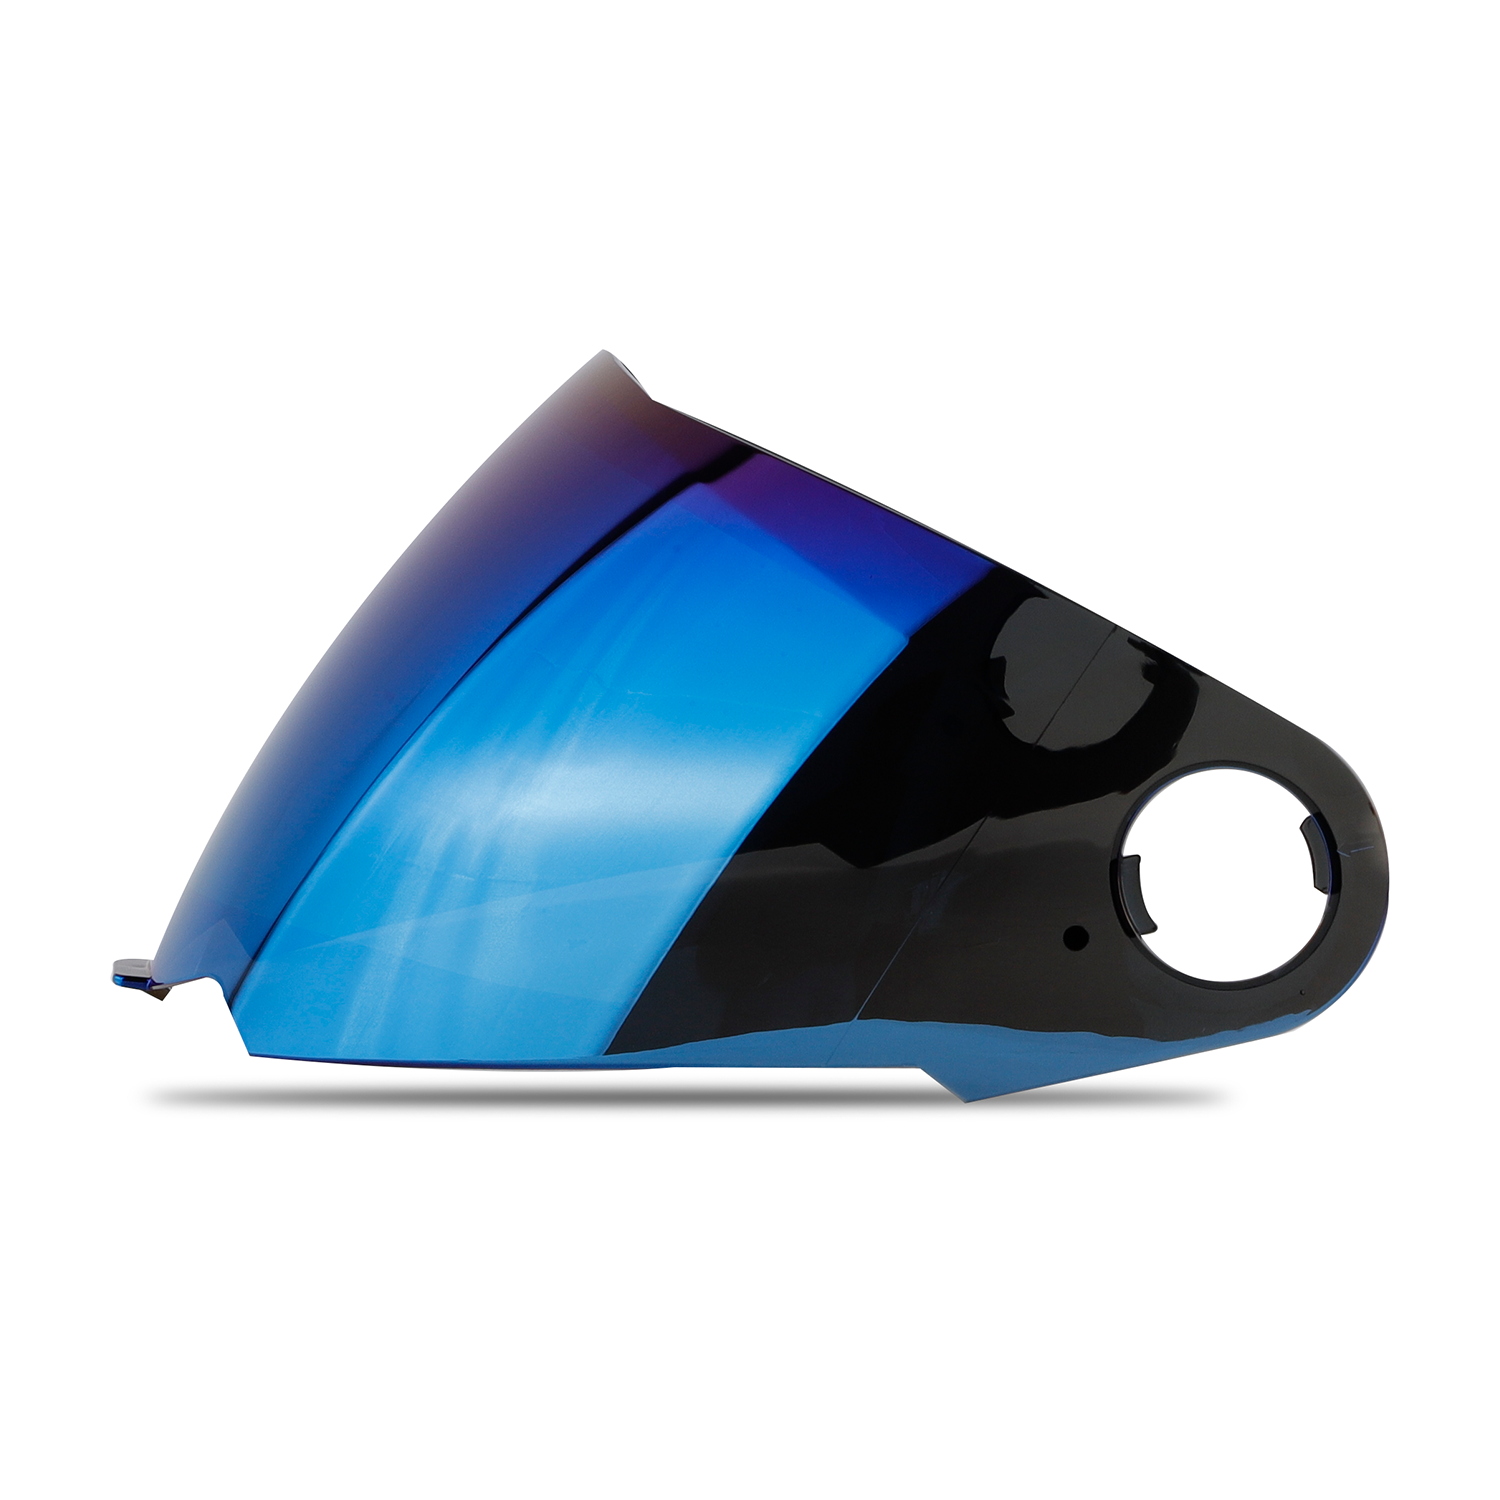 Steelbird Helmet Visor Compatible For All SBA-1 Model Helmets (Chrome Blue Visor)